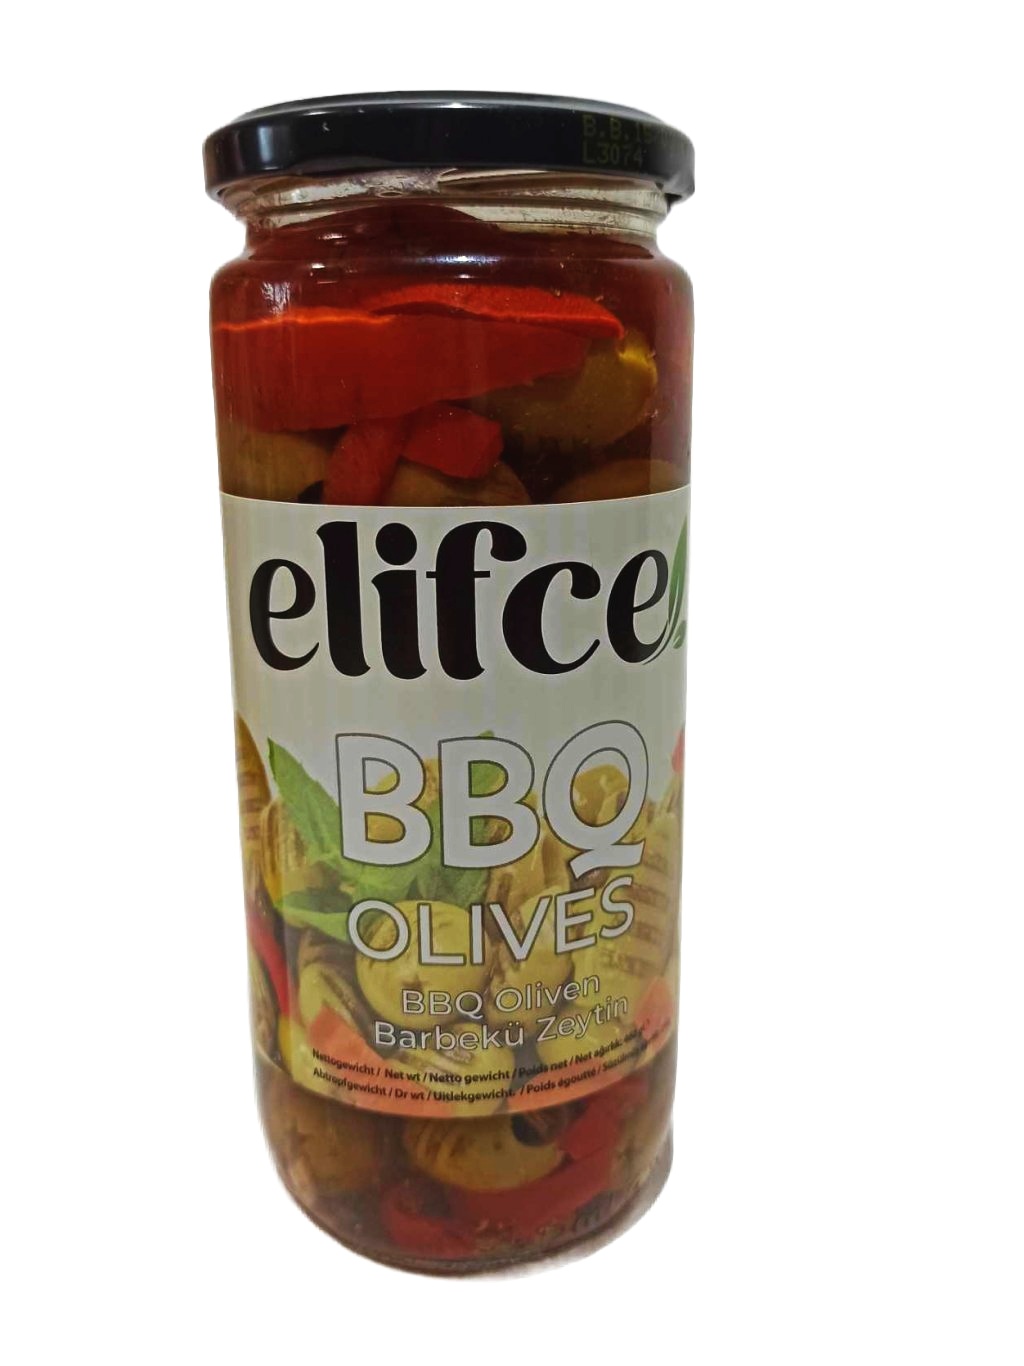 Elifce - BBQ Olives - grilované olivy, 460g